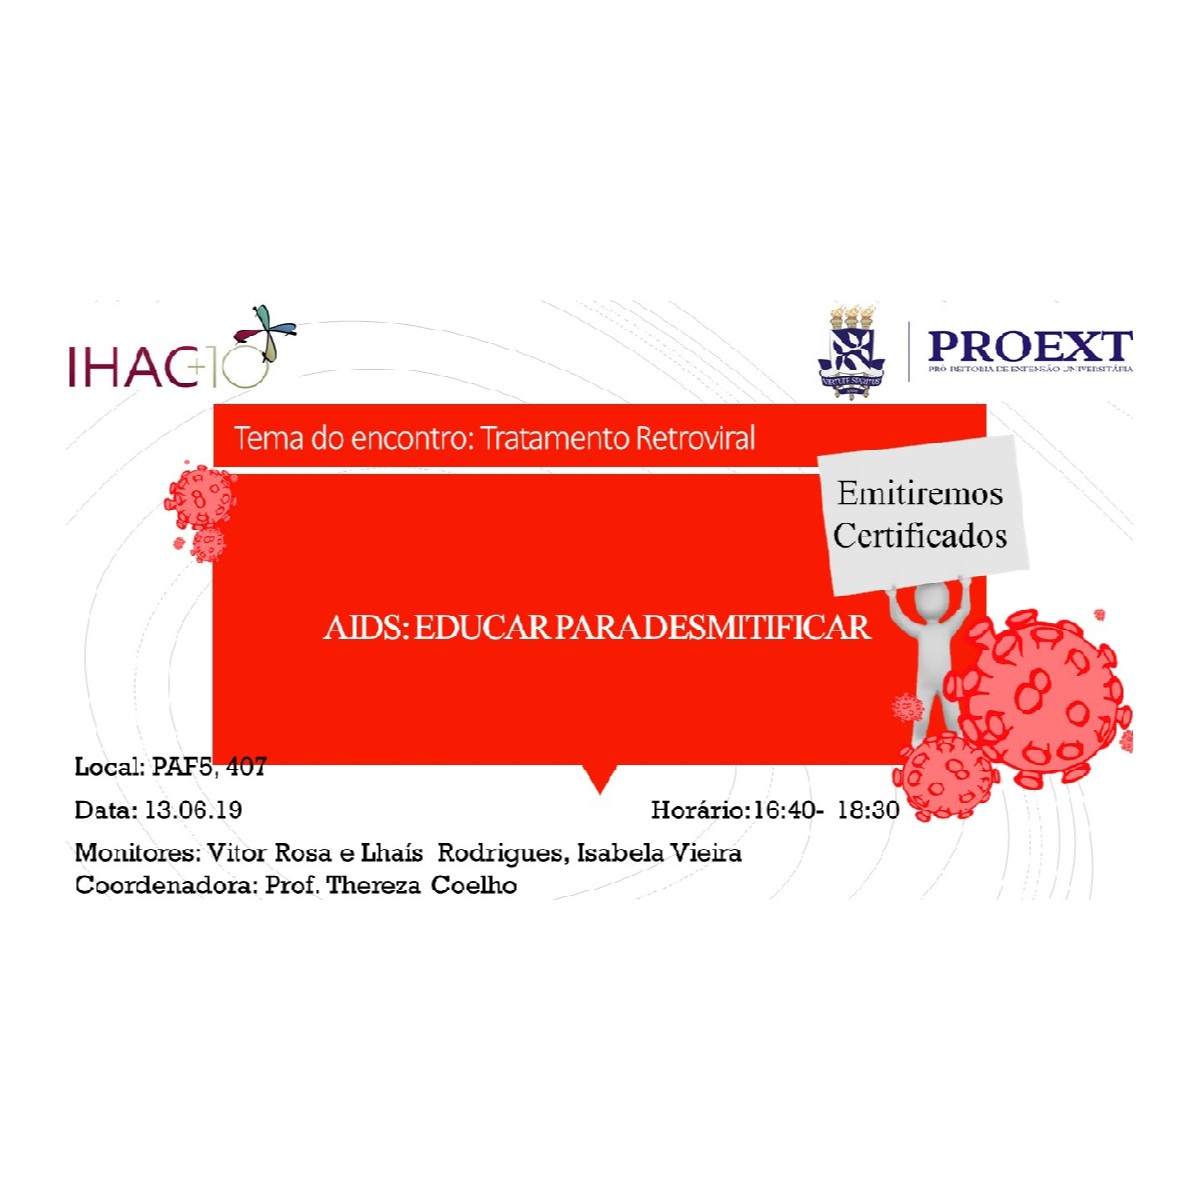 Próxima edição do encontro “HIV/AIDS: Educar para desmitificar” discute “Tratamento Retroviral”